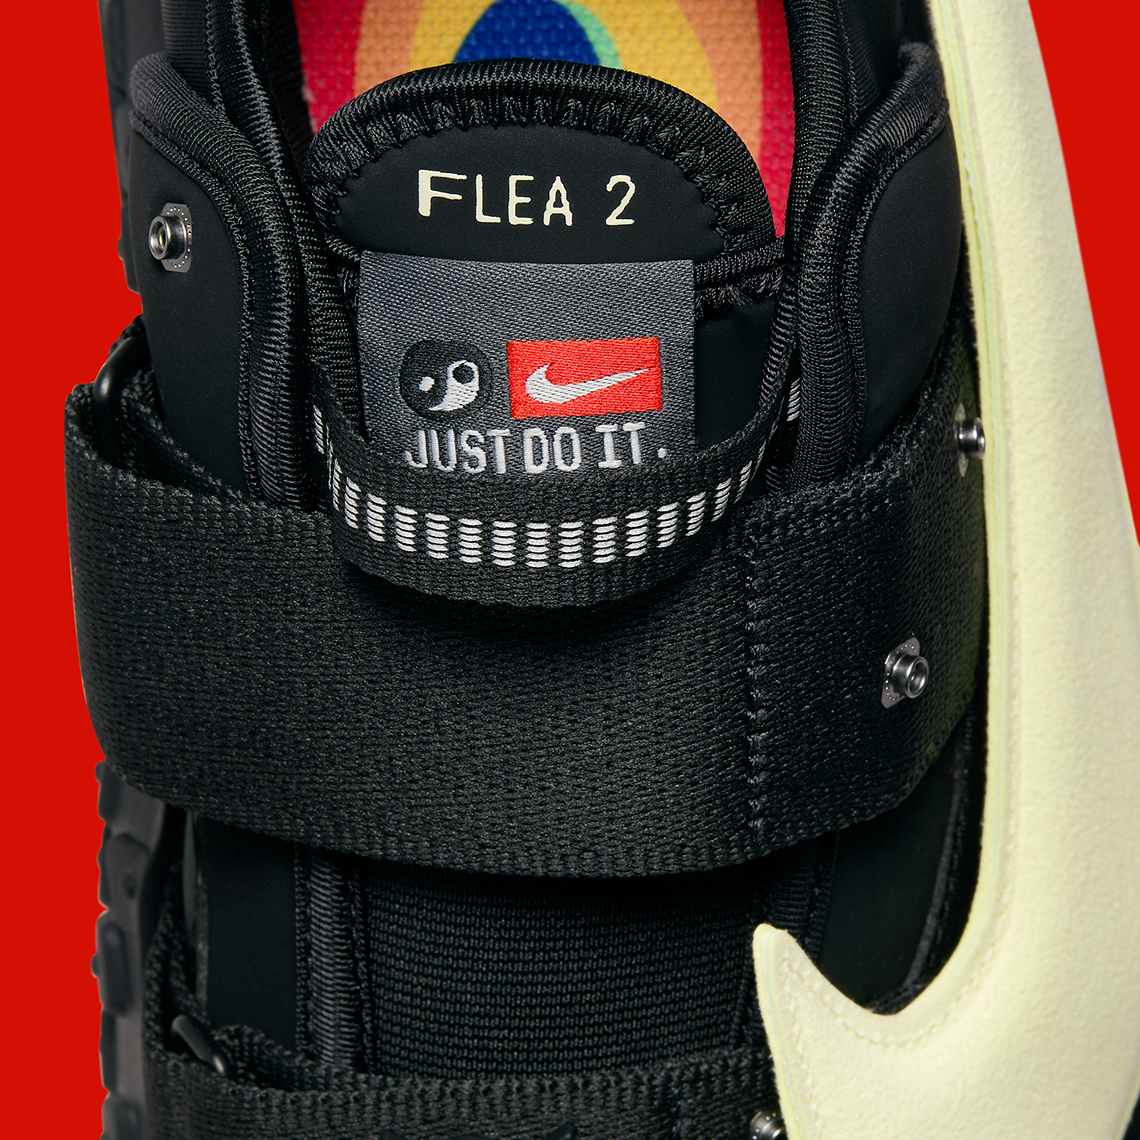 Cpfm Nike Flea 2 Black Alabaster Dv7164 001 Release Date 11